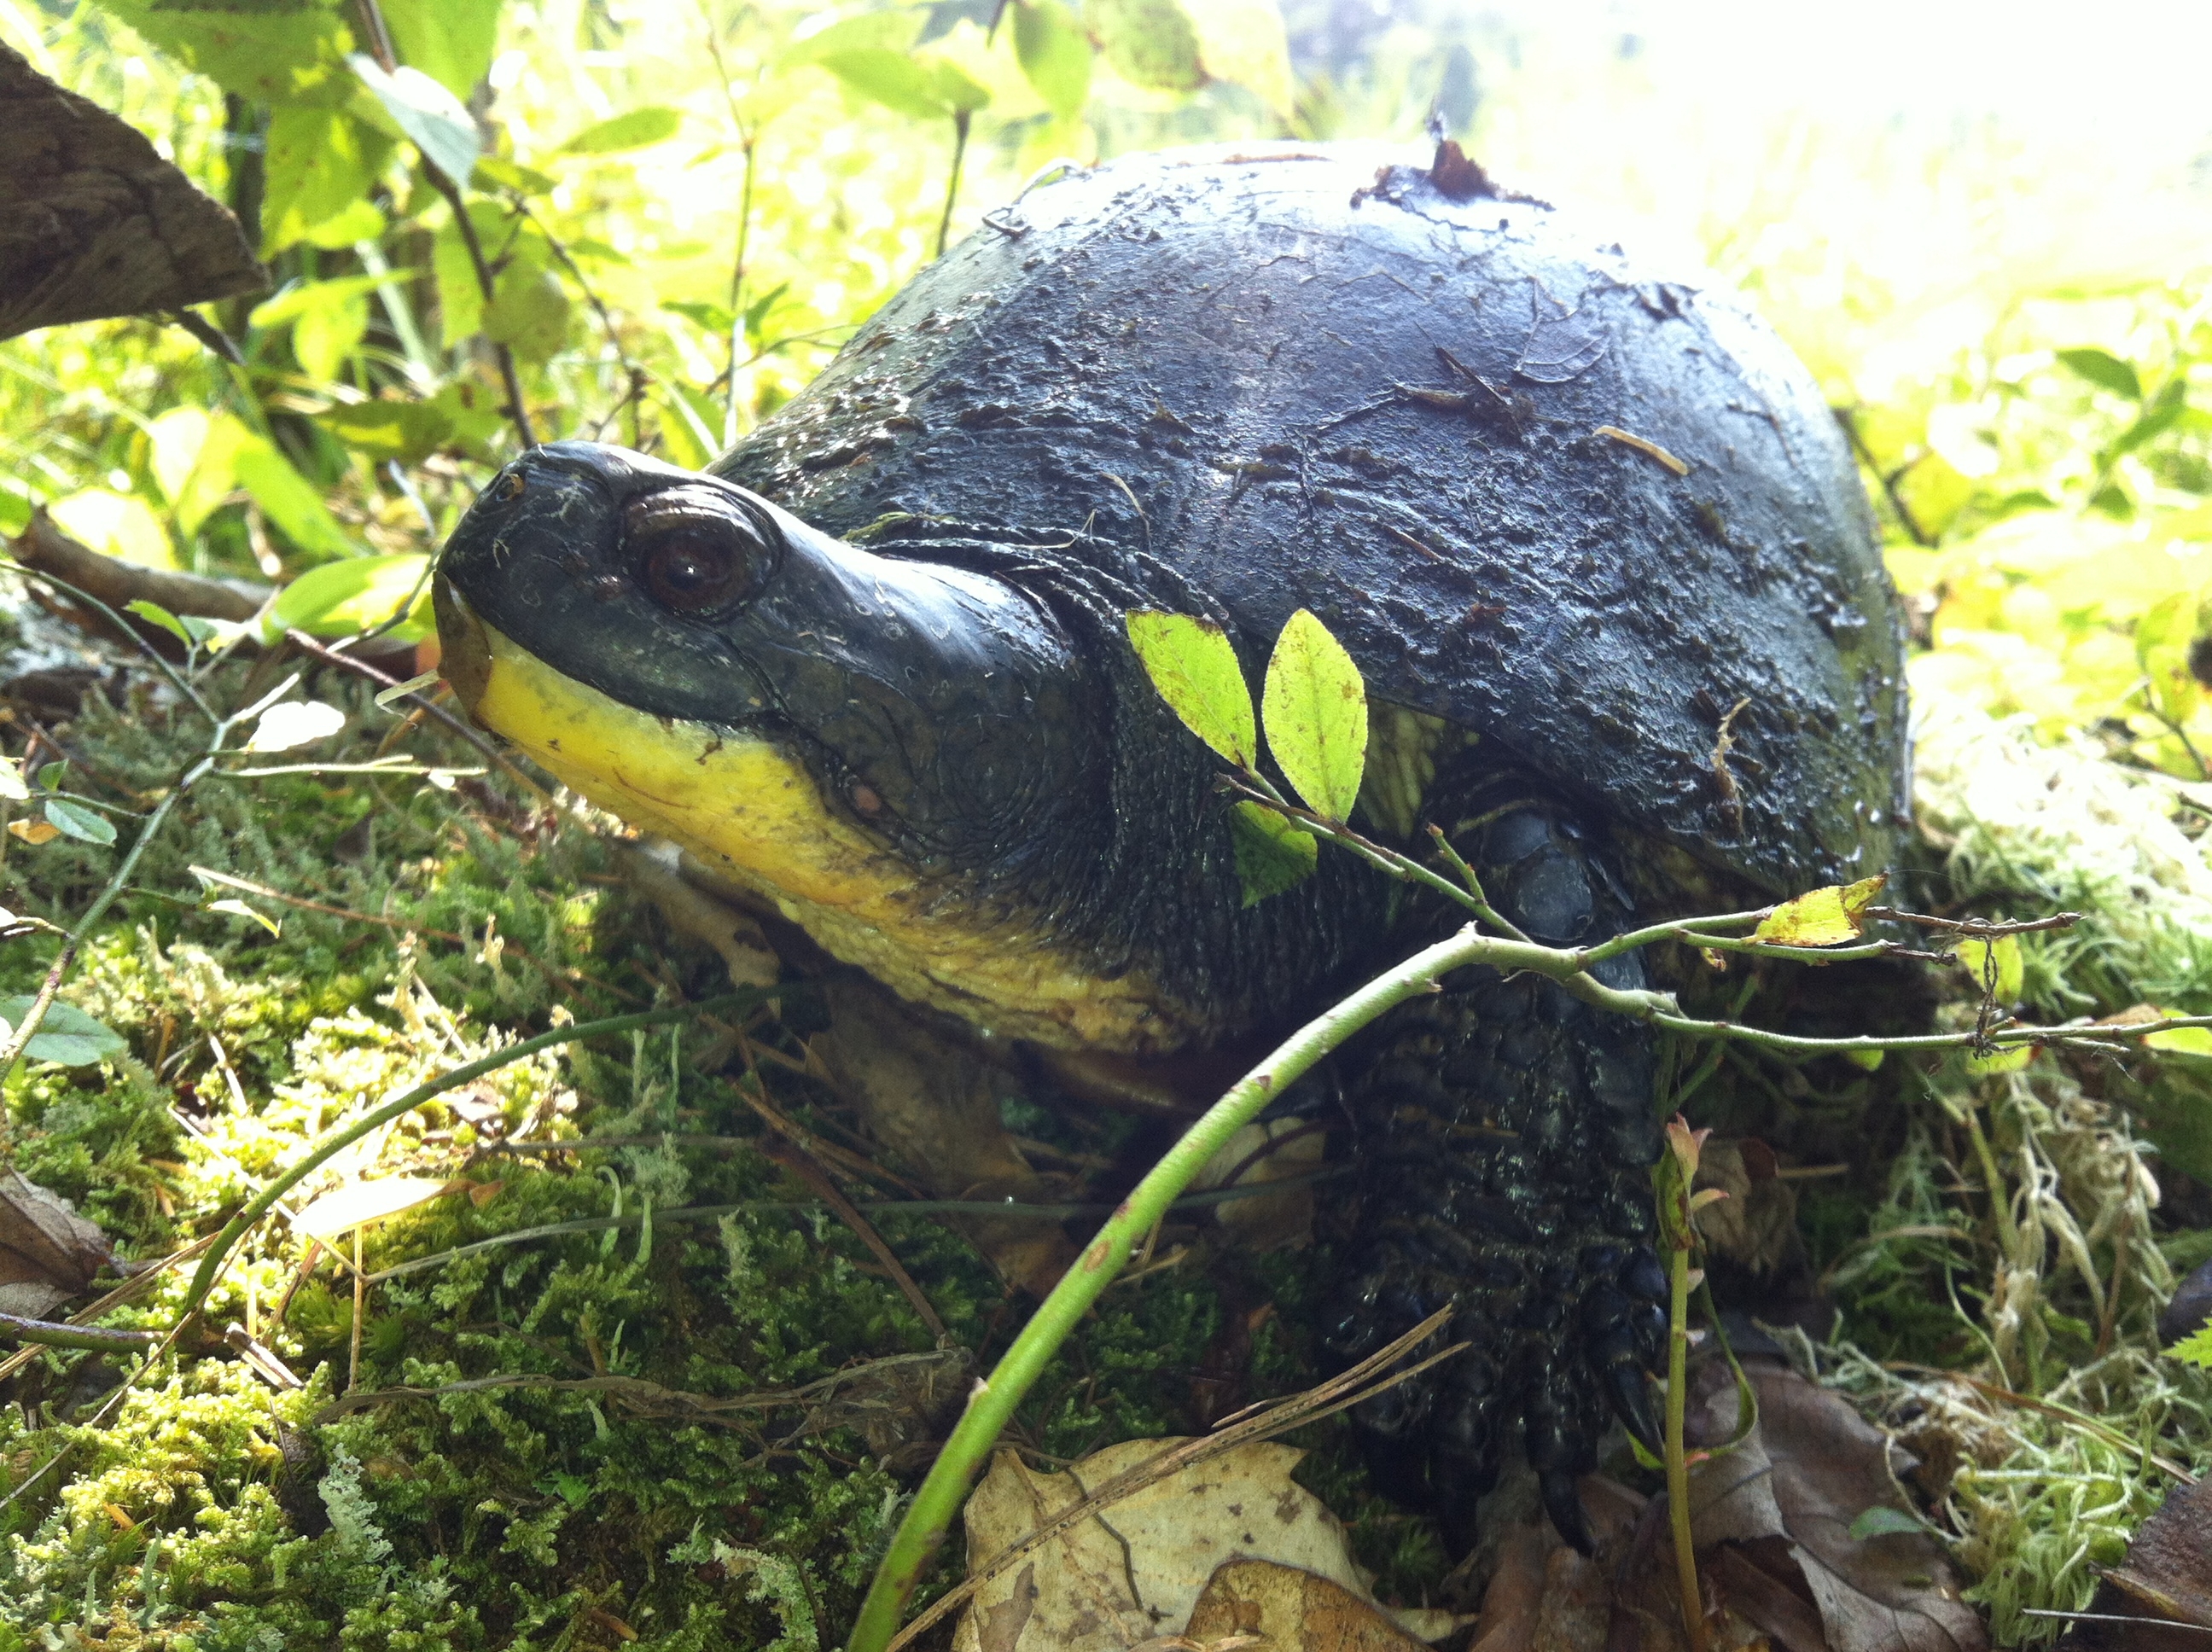 Blanding's turtle